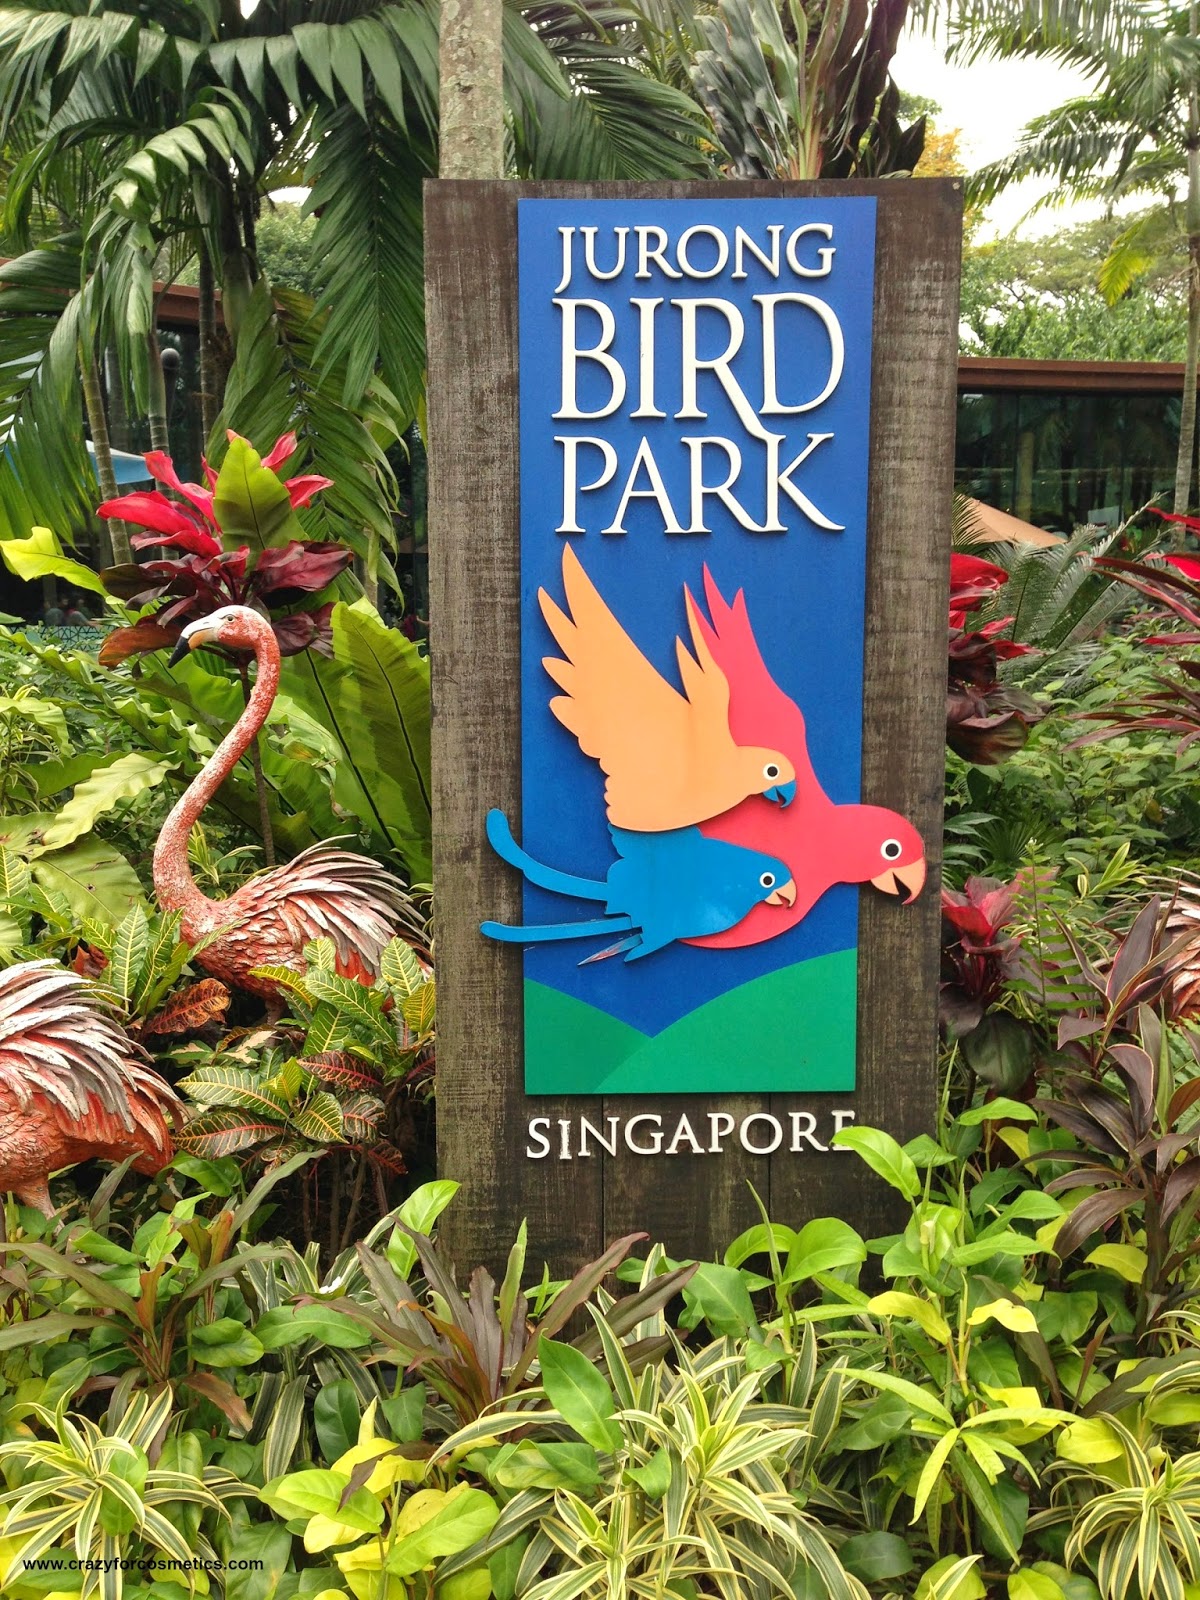 Jurong Bird Park- Jurong Bird Park tickets- jurong bird park timings- jurong bird park review- jurong bird park in Singapore- jurong bird park nearest mrt- jurong bird park shows- Travel- Singapore